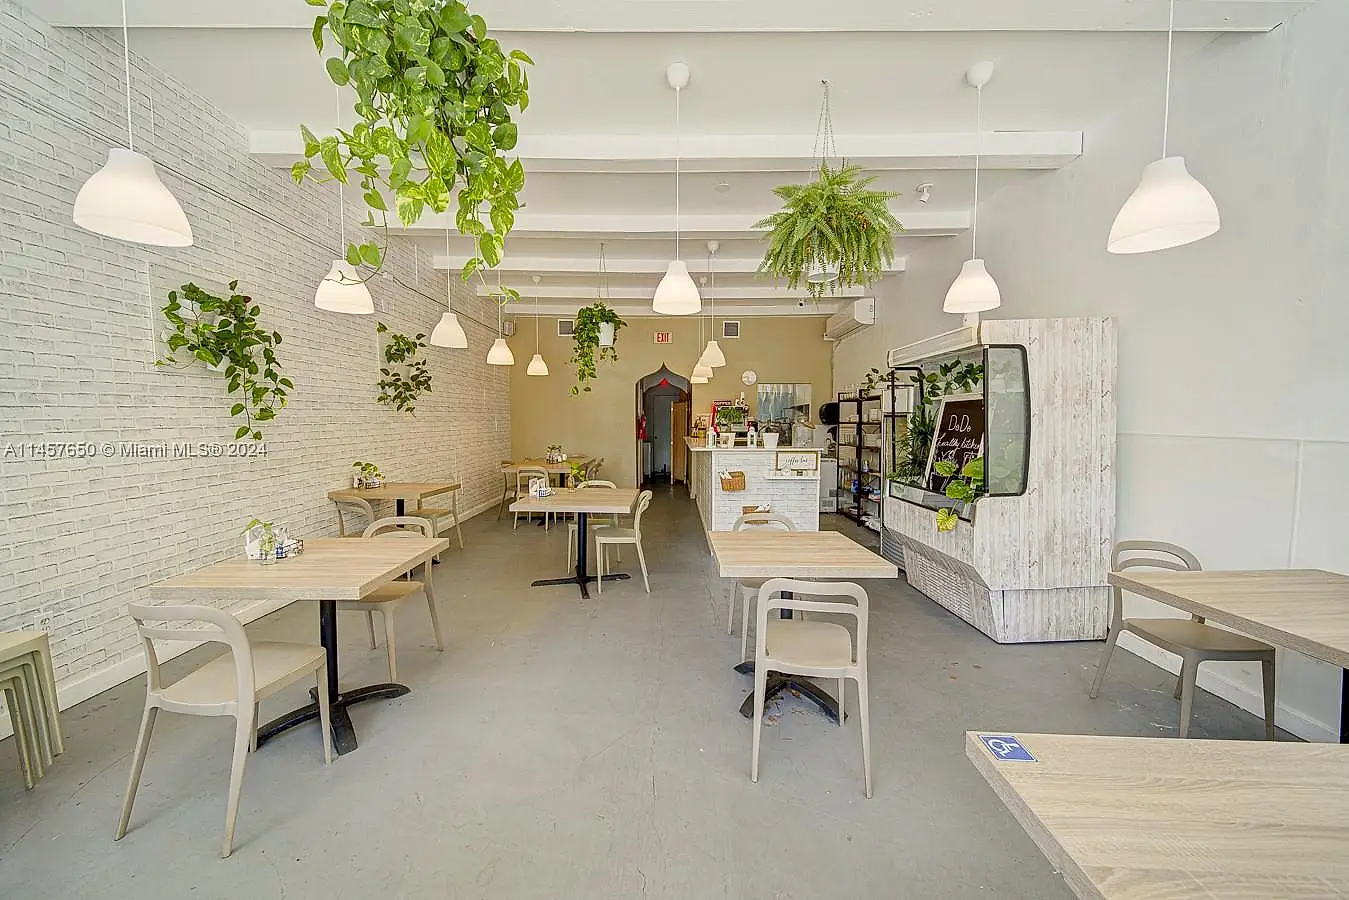 Cafe Bistro For Sale In Wynwood Design District